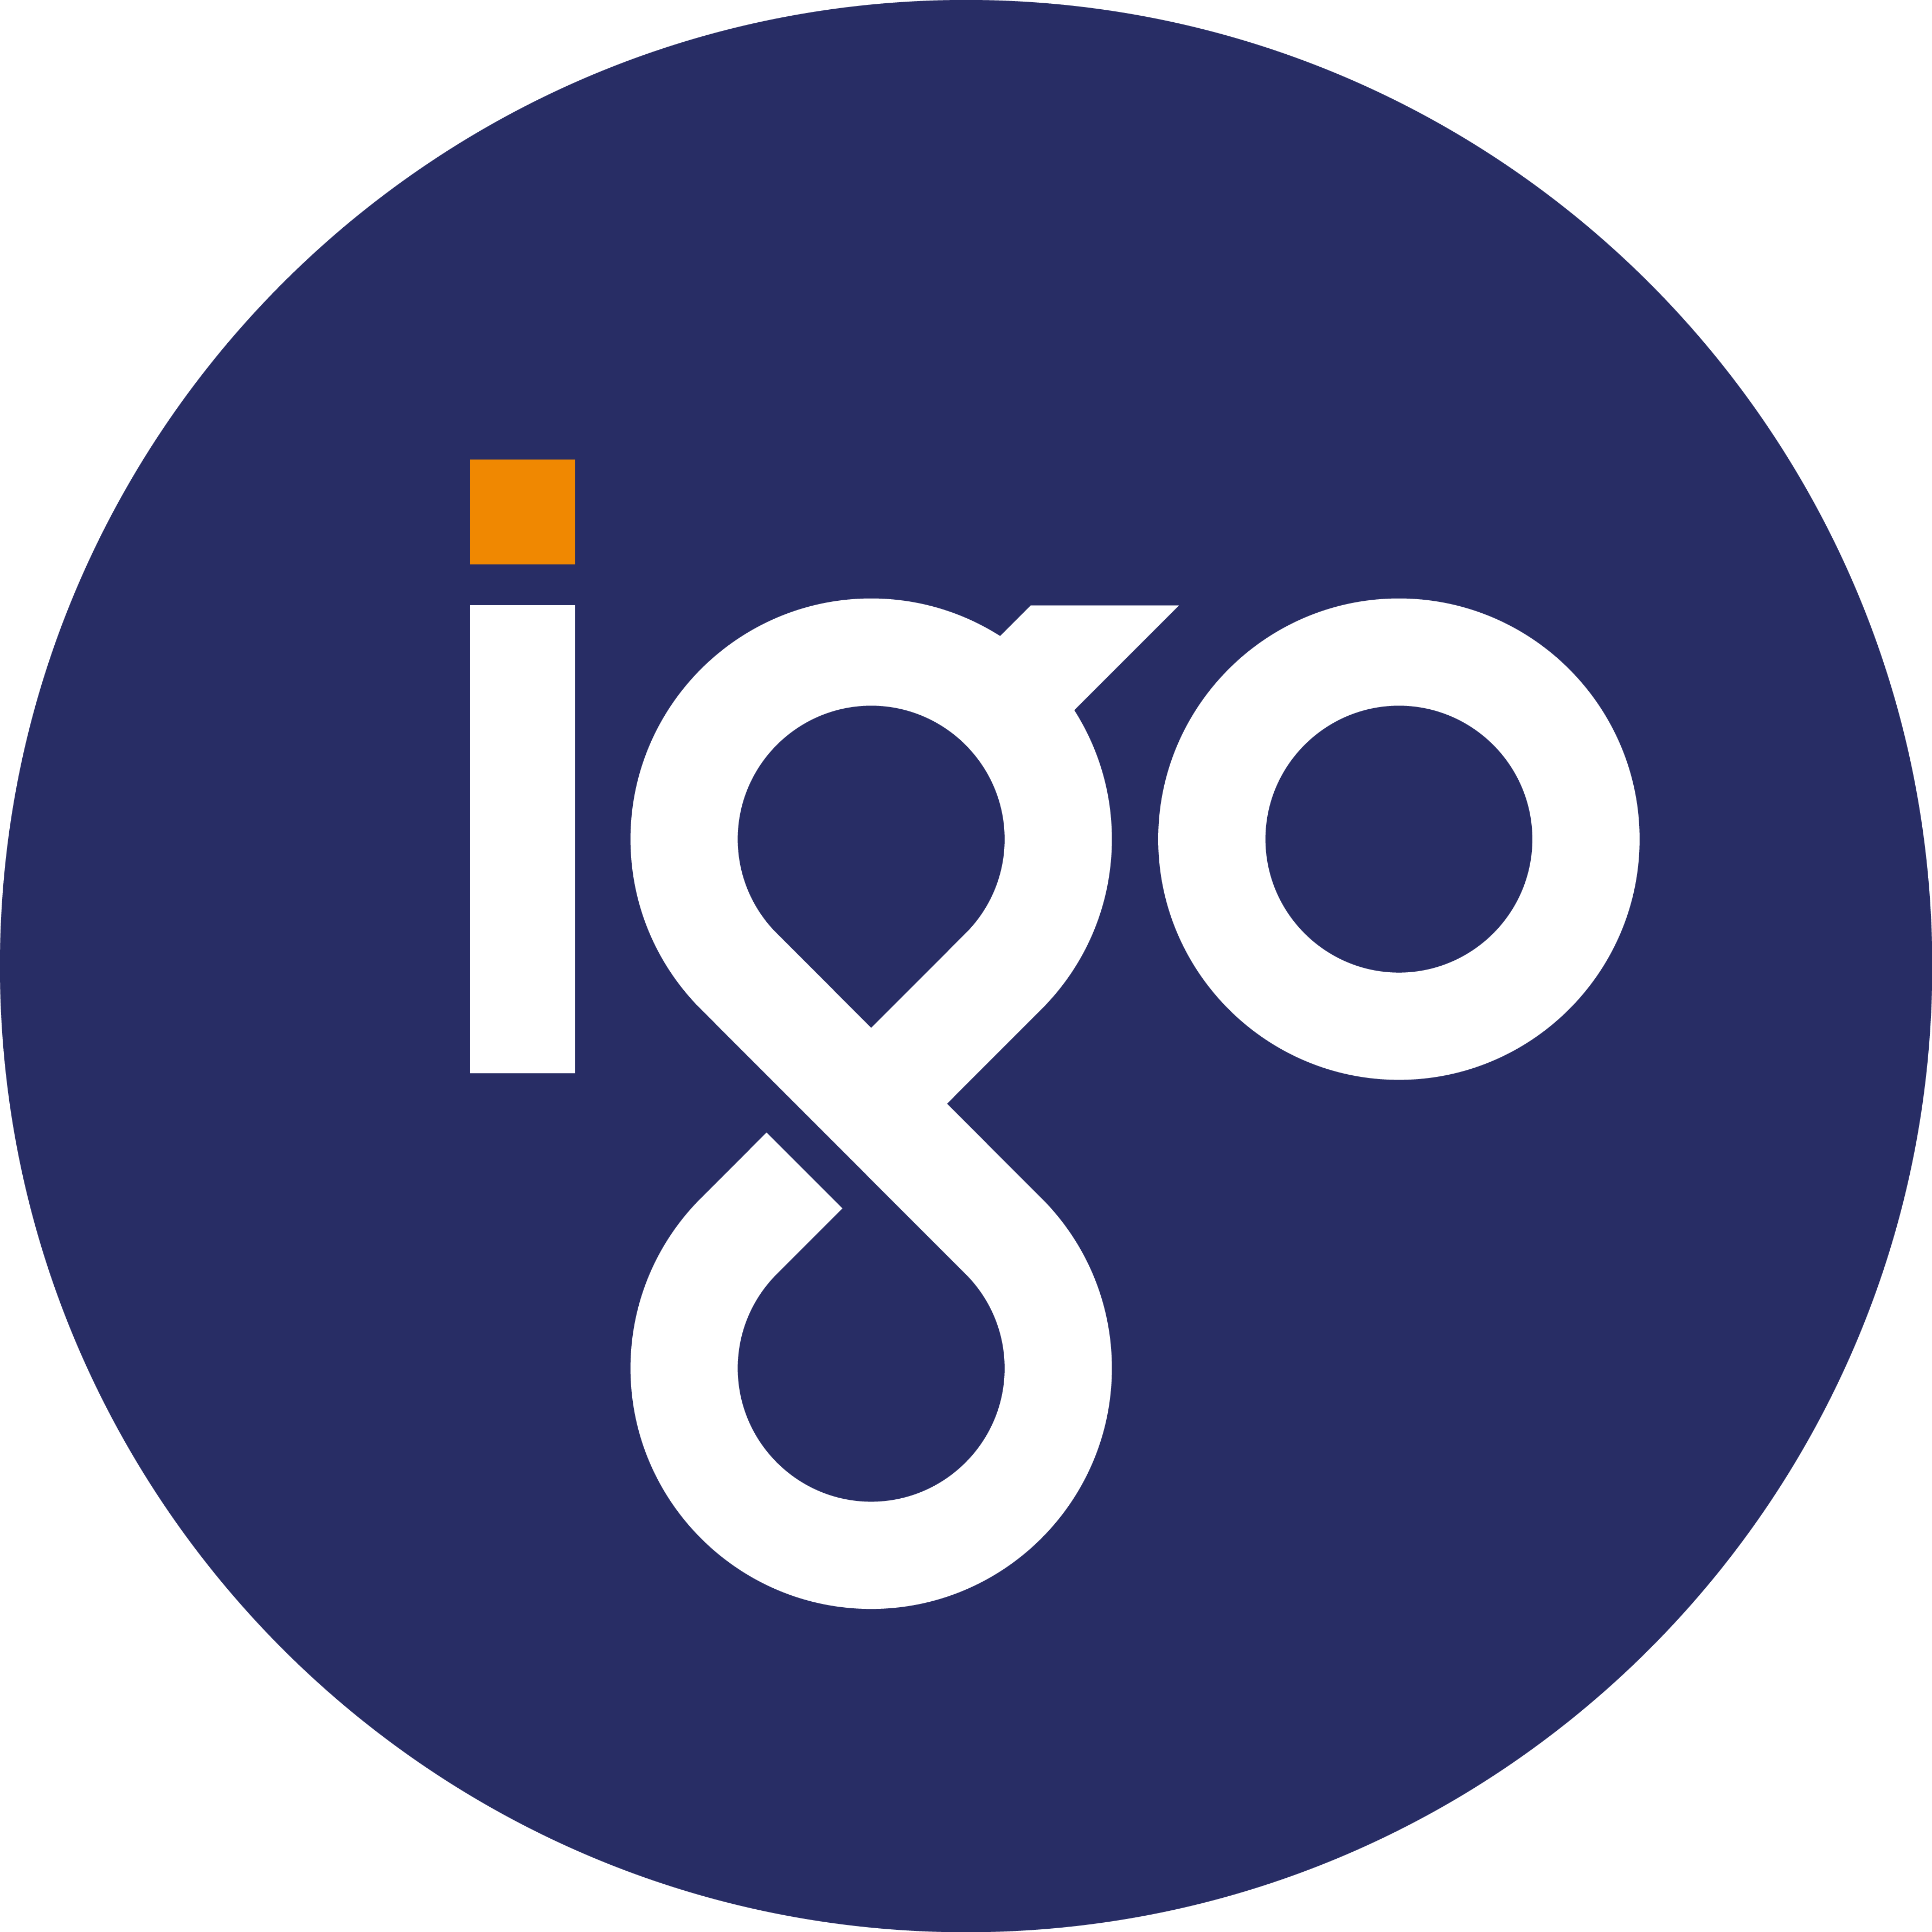 Igo Logo Logodix